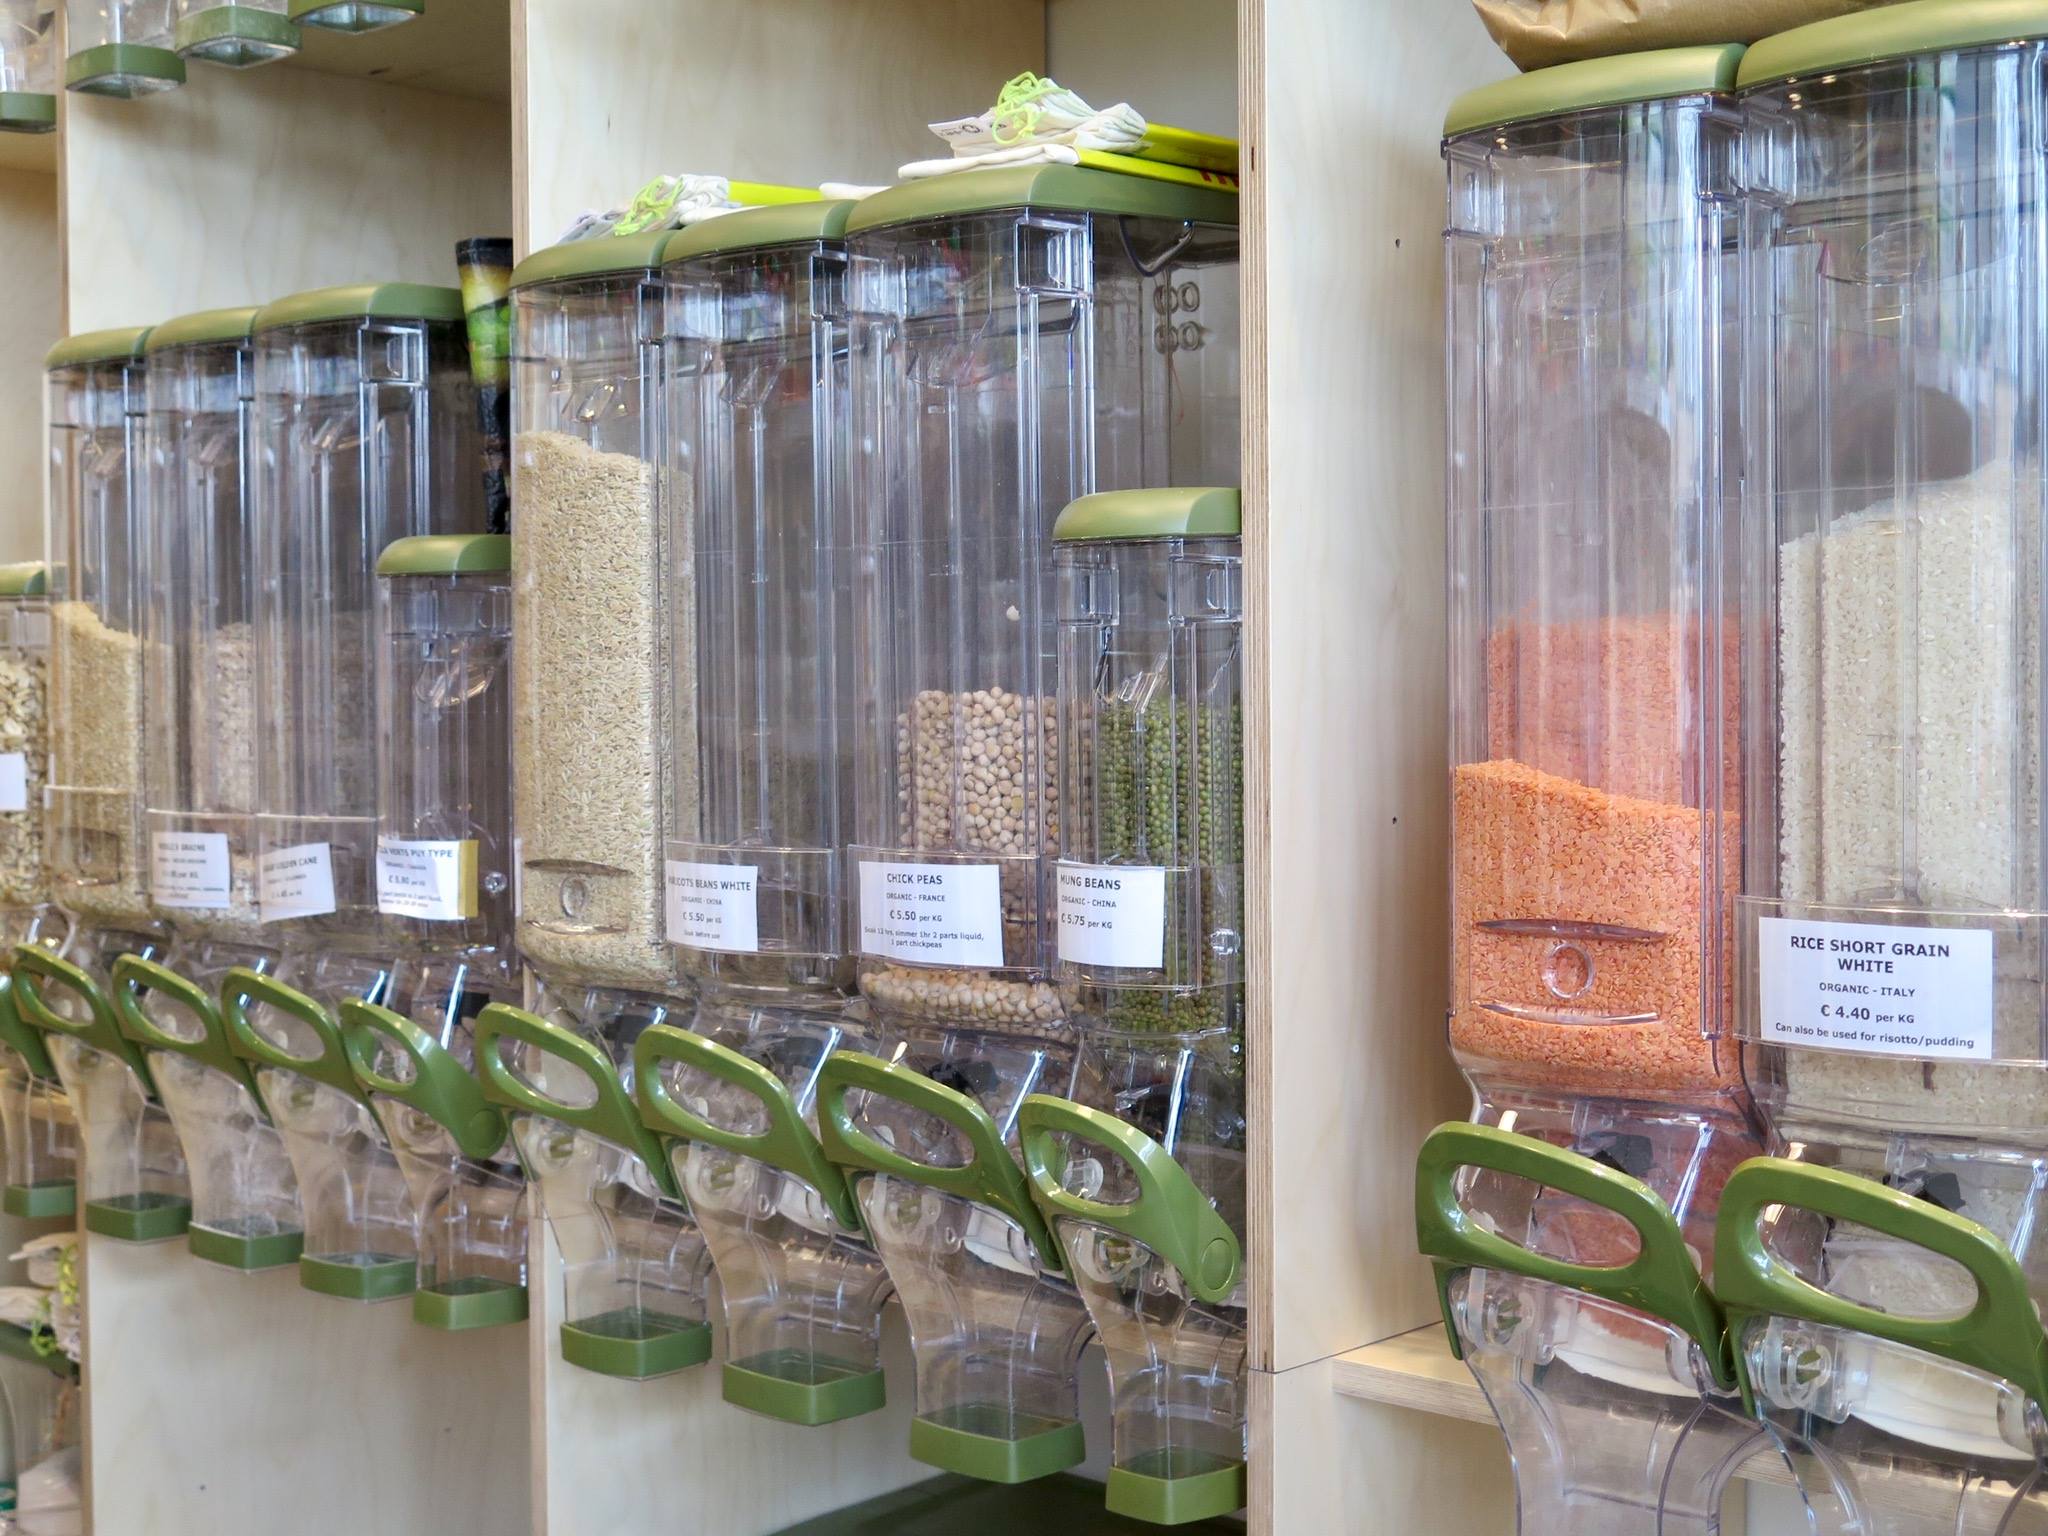 Vendita di legumi e cereali sfusi nei dispenser di un supermercato food coop